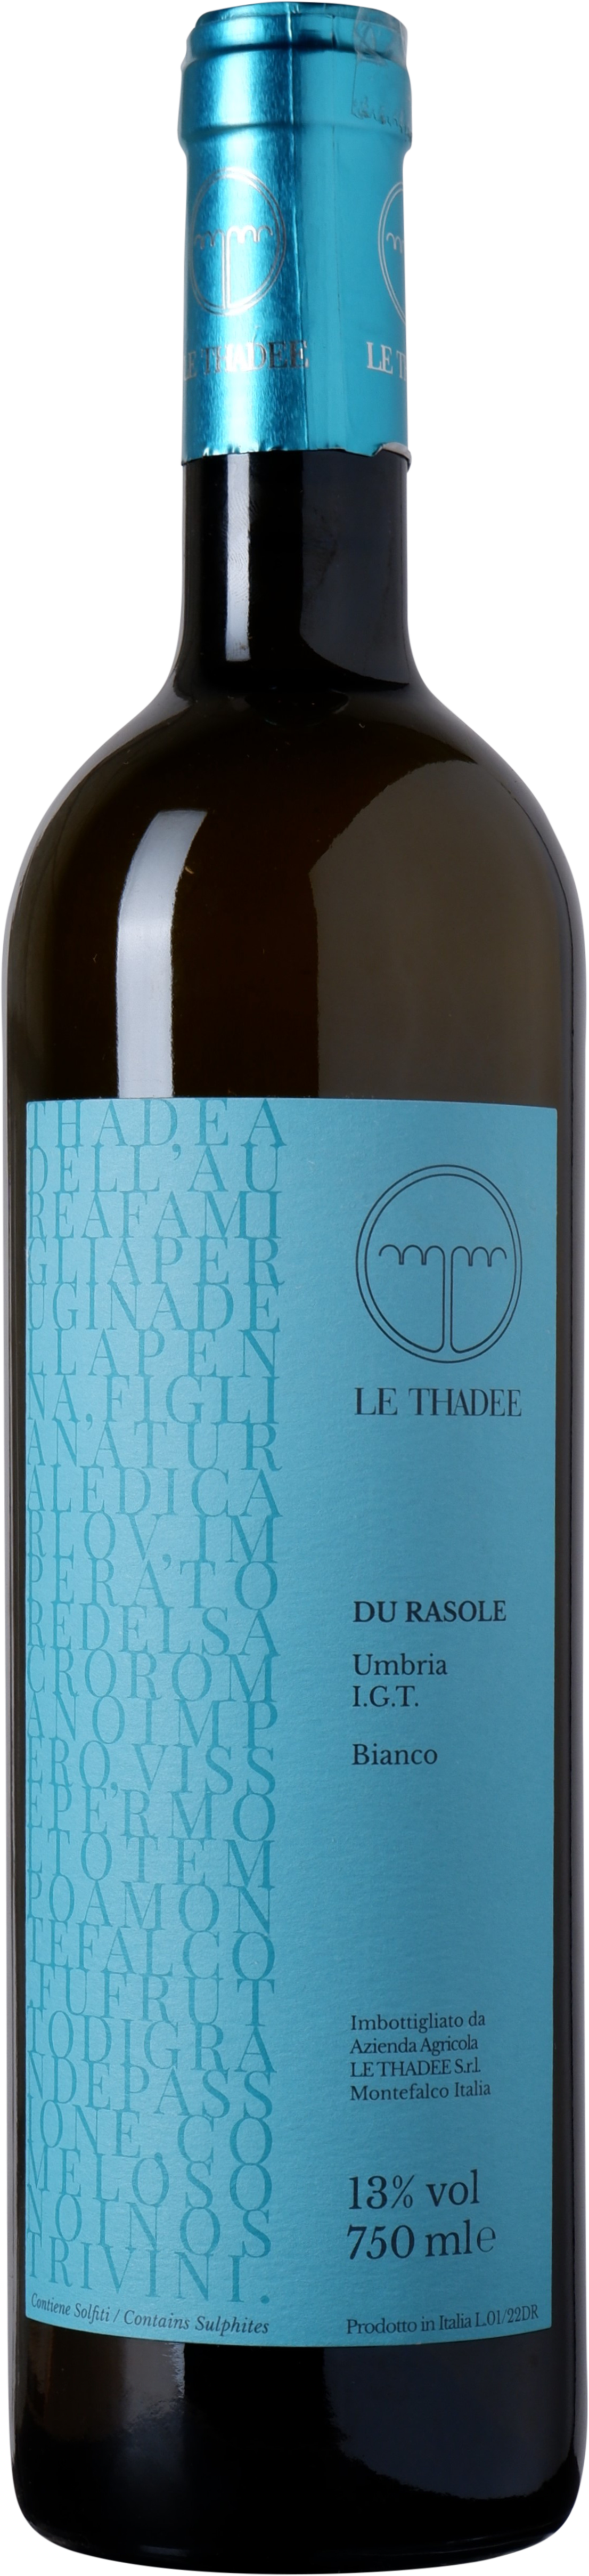 Le Thadee - Du Rasole | Umbria IGT | BIO